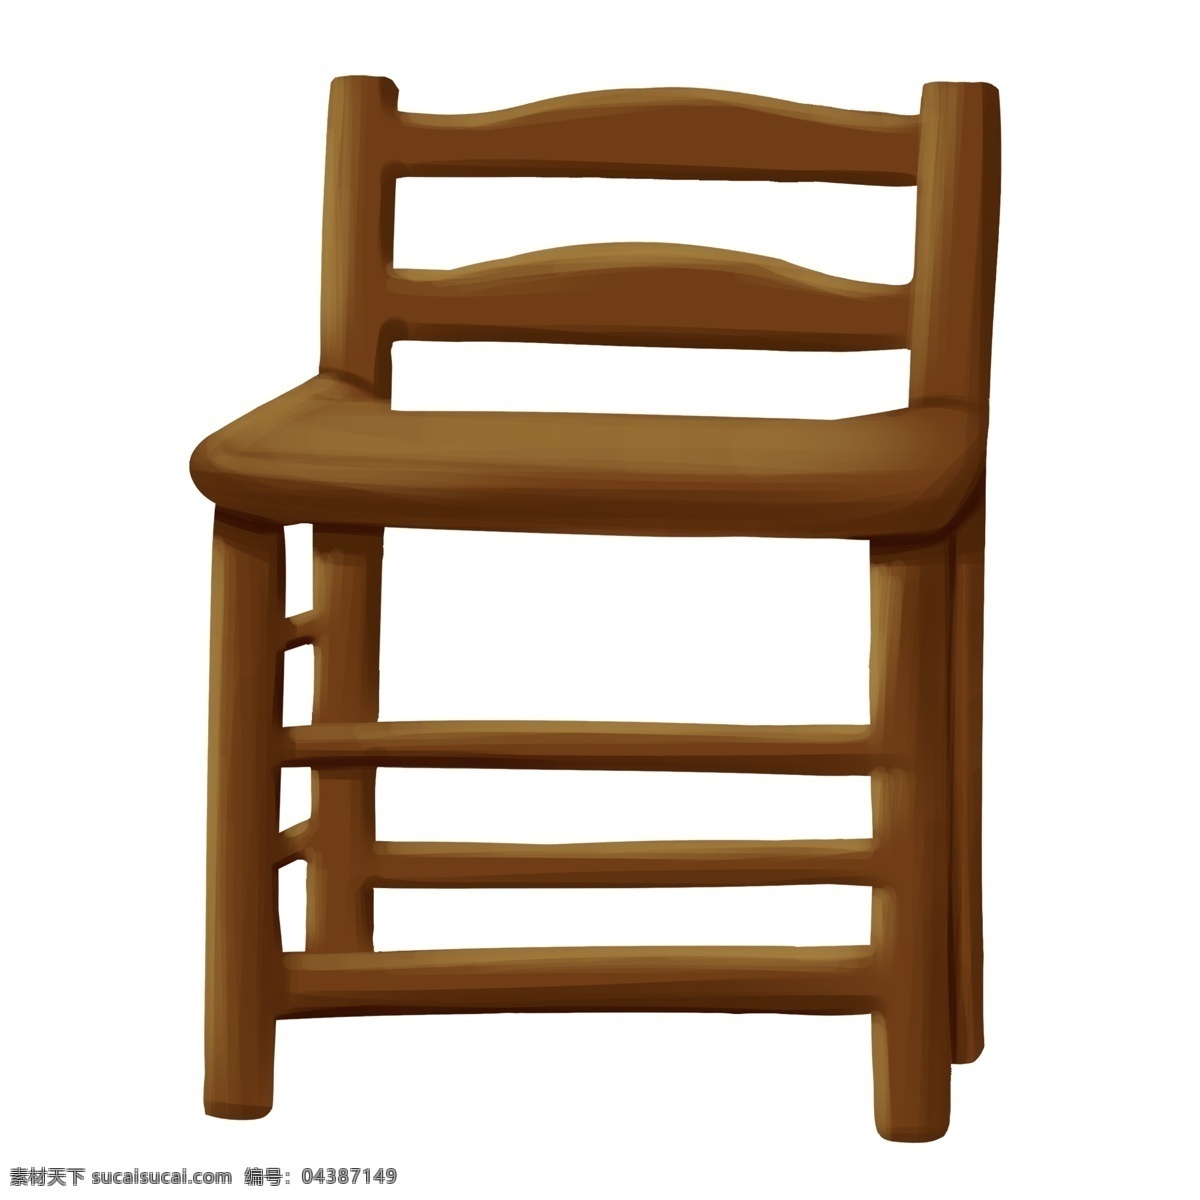 椅子 木质 卡通 家具